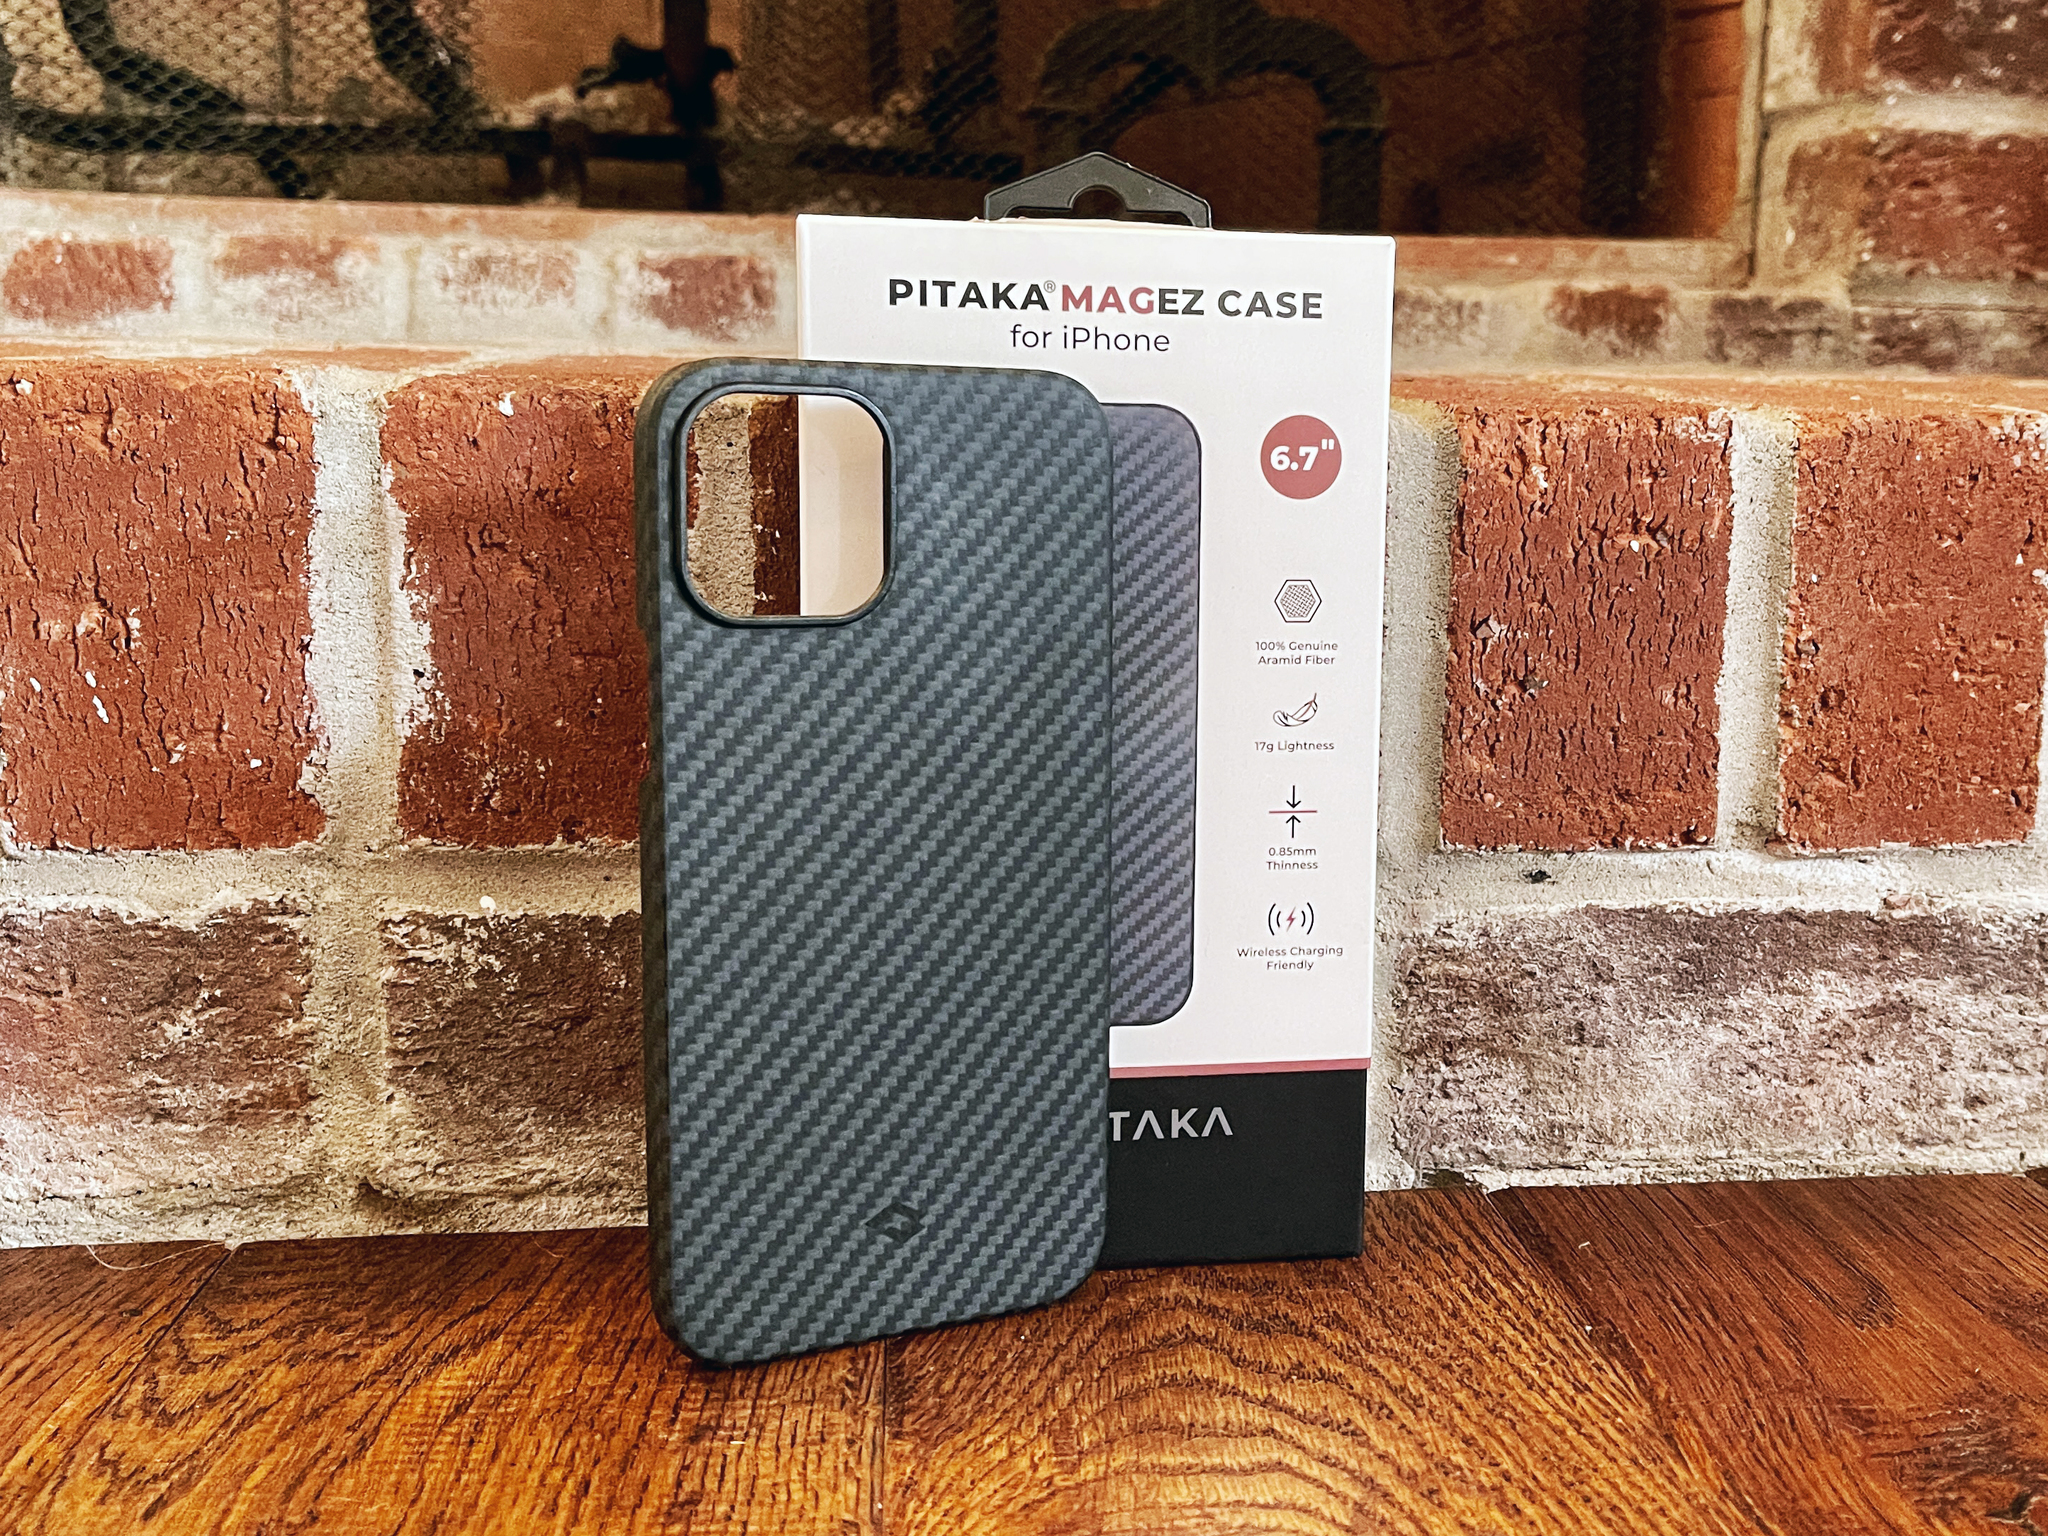 Pitaka Magez Iphone Case